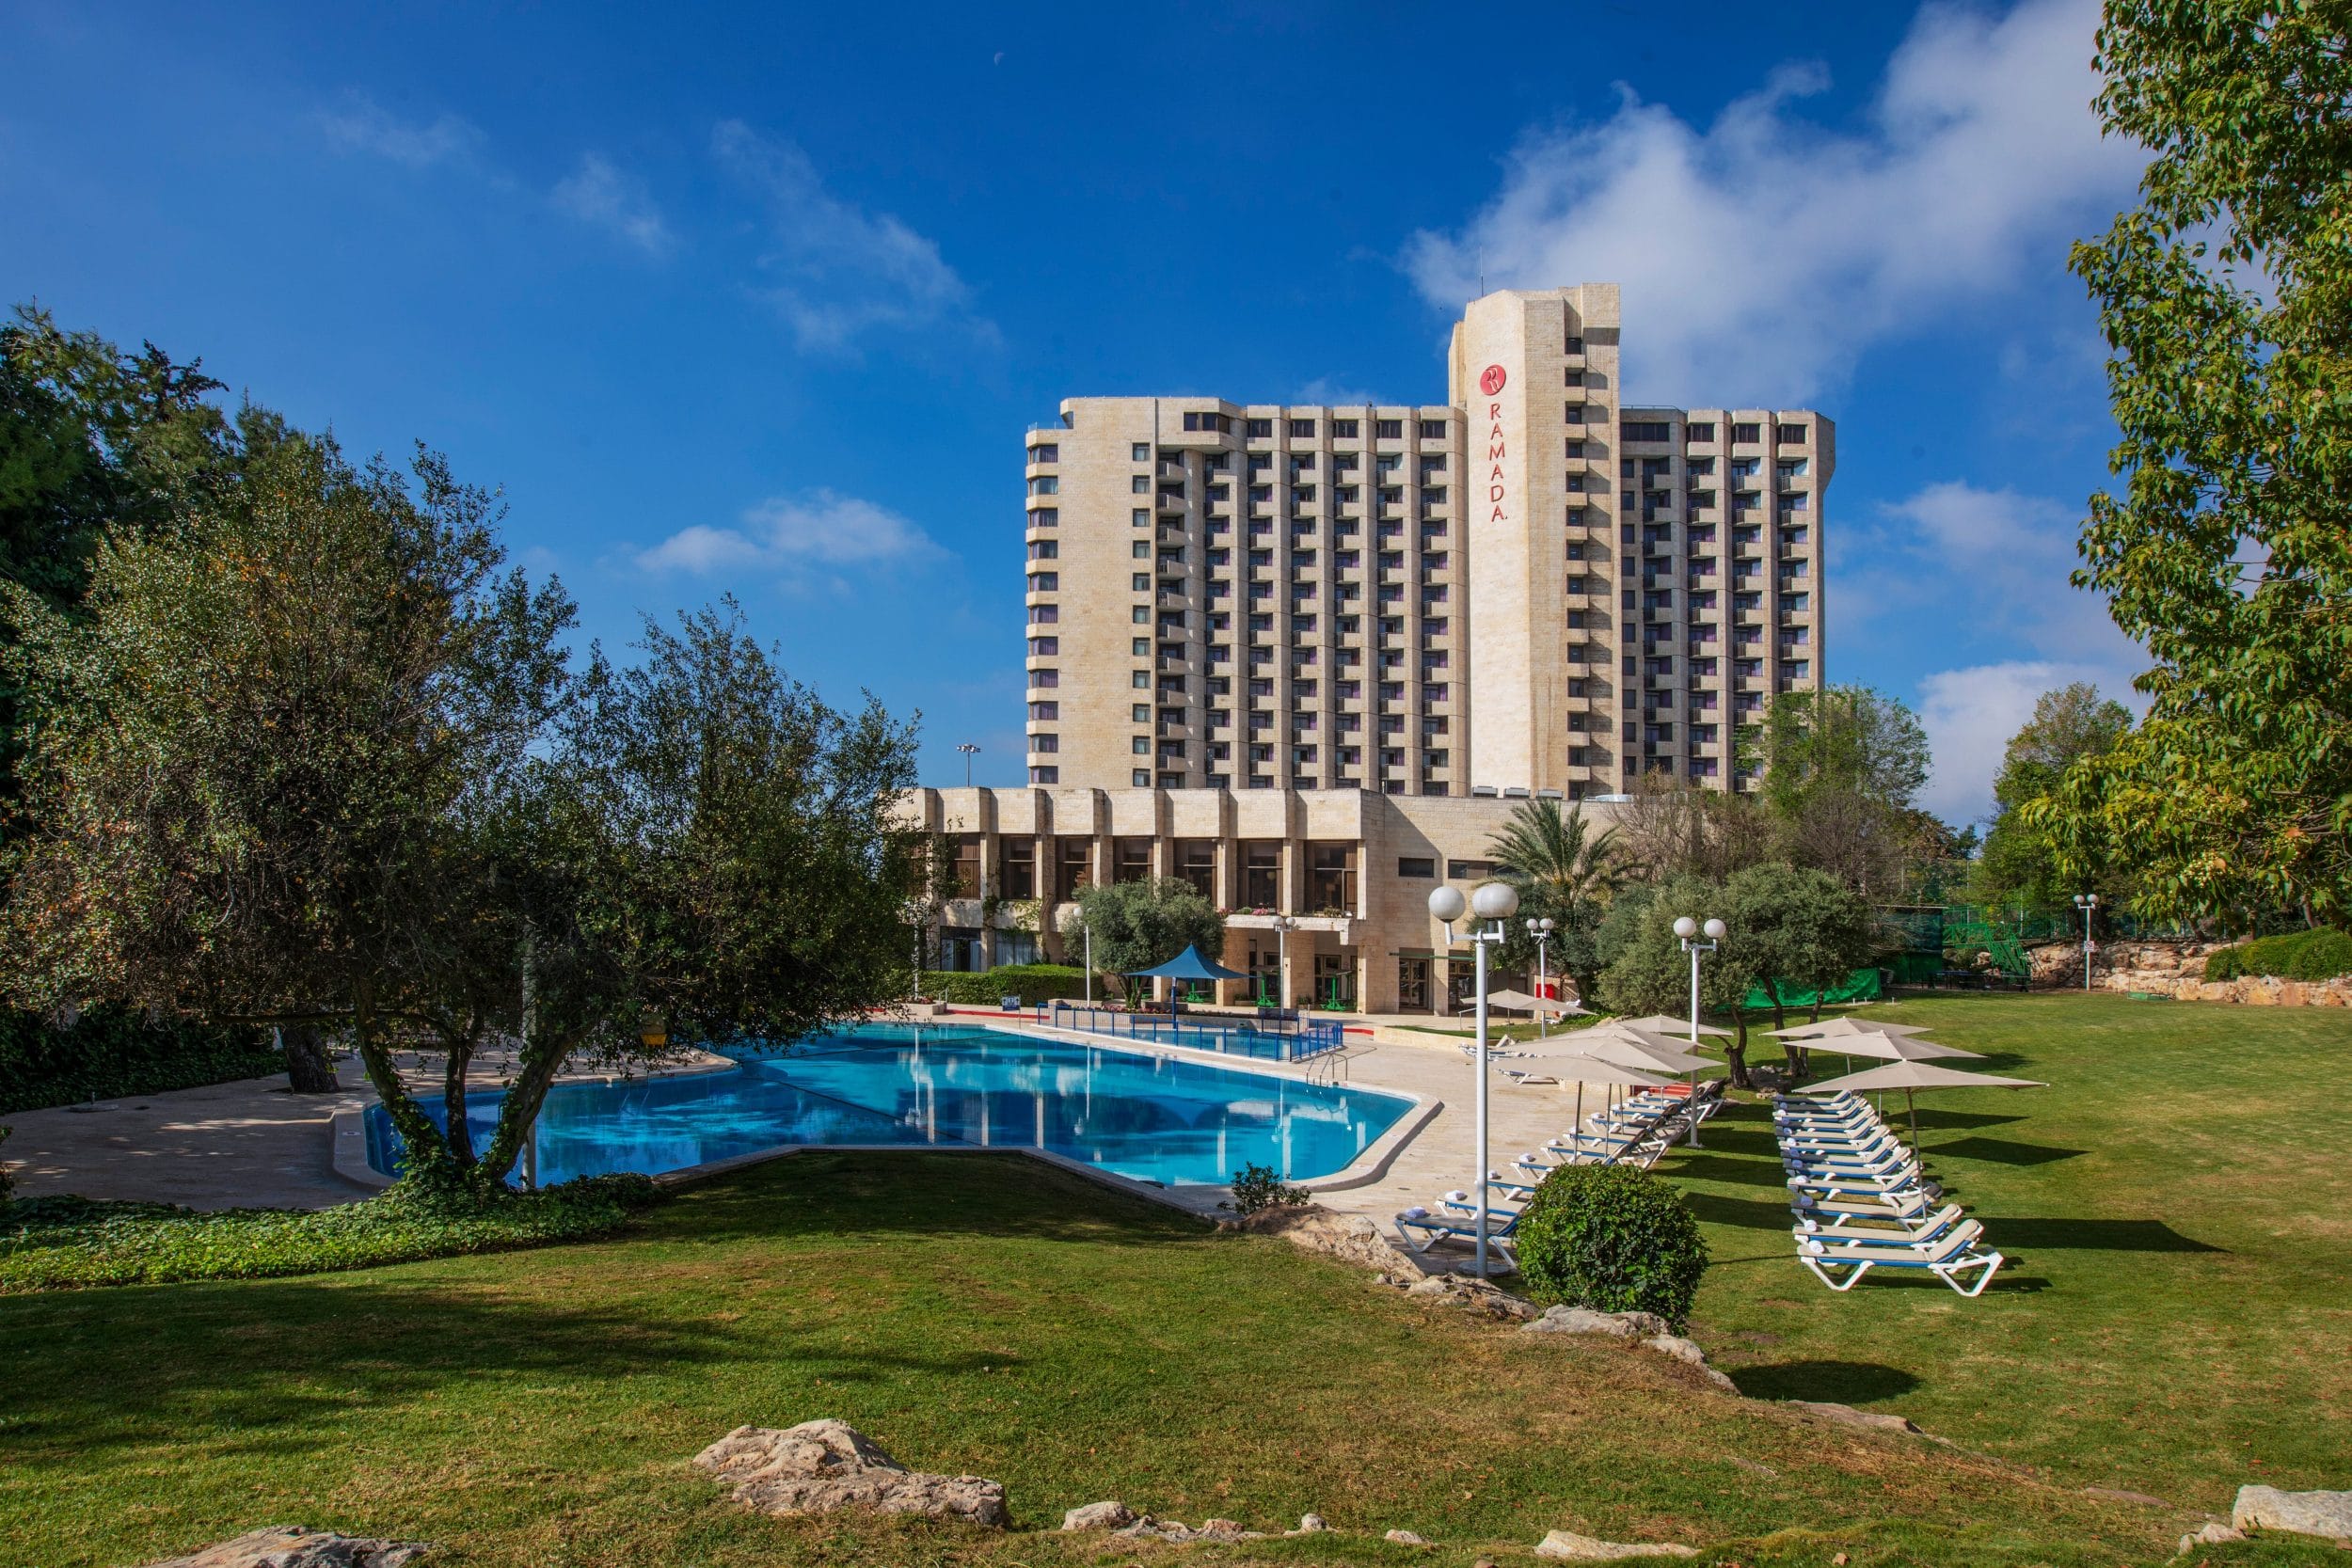 צילום של מלון רמדה ירושלים - לילה שלישי חינם ואטרקציות בחינם לבחירה!